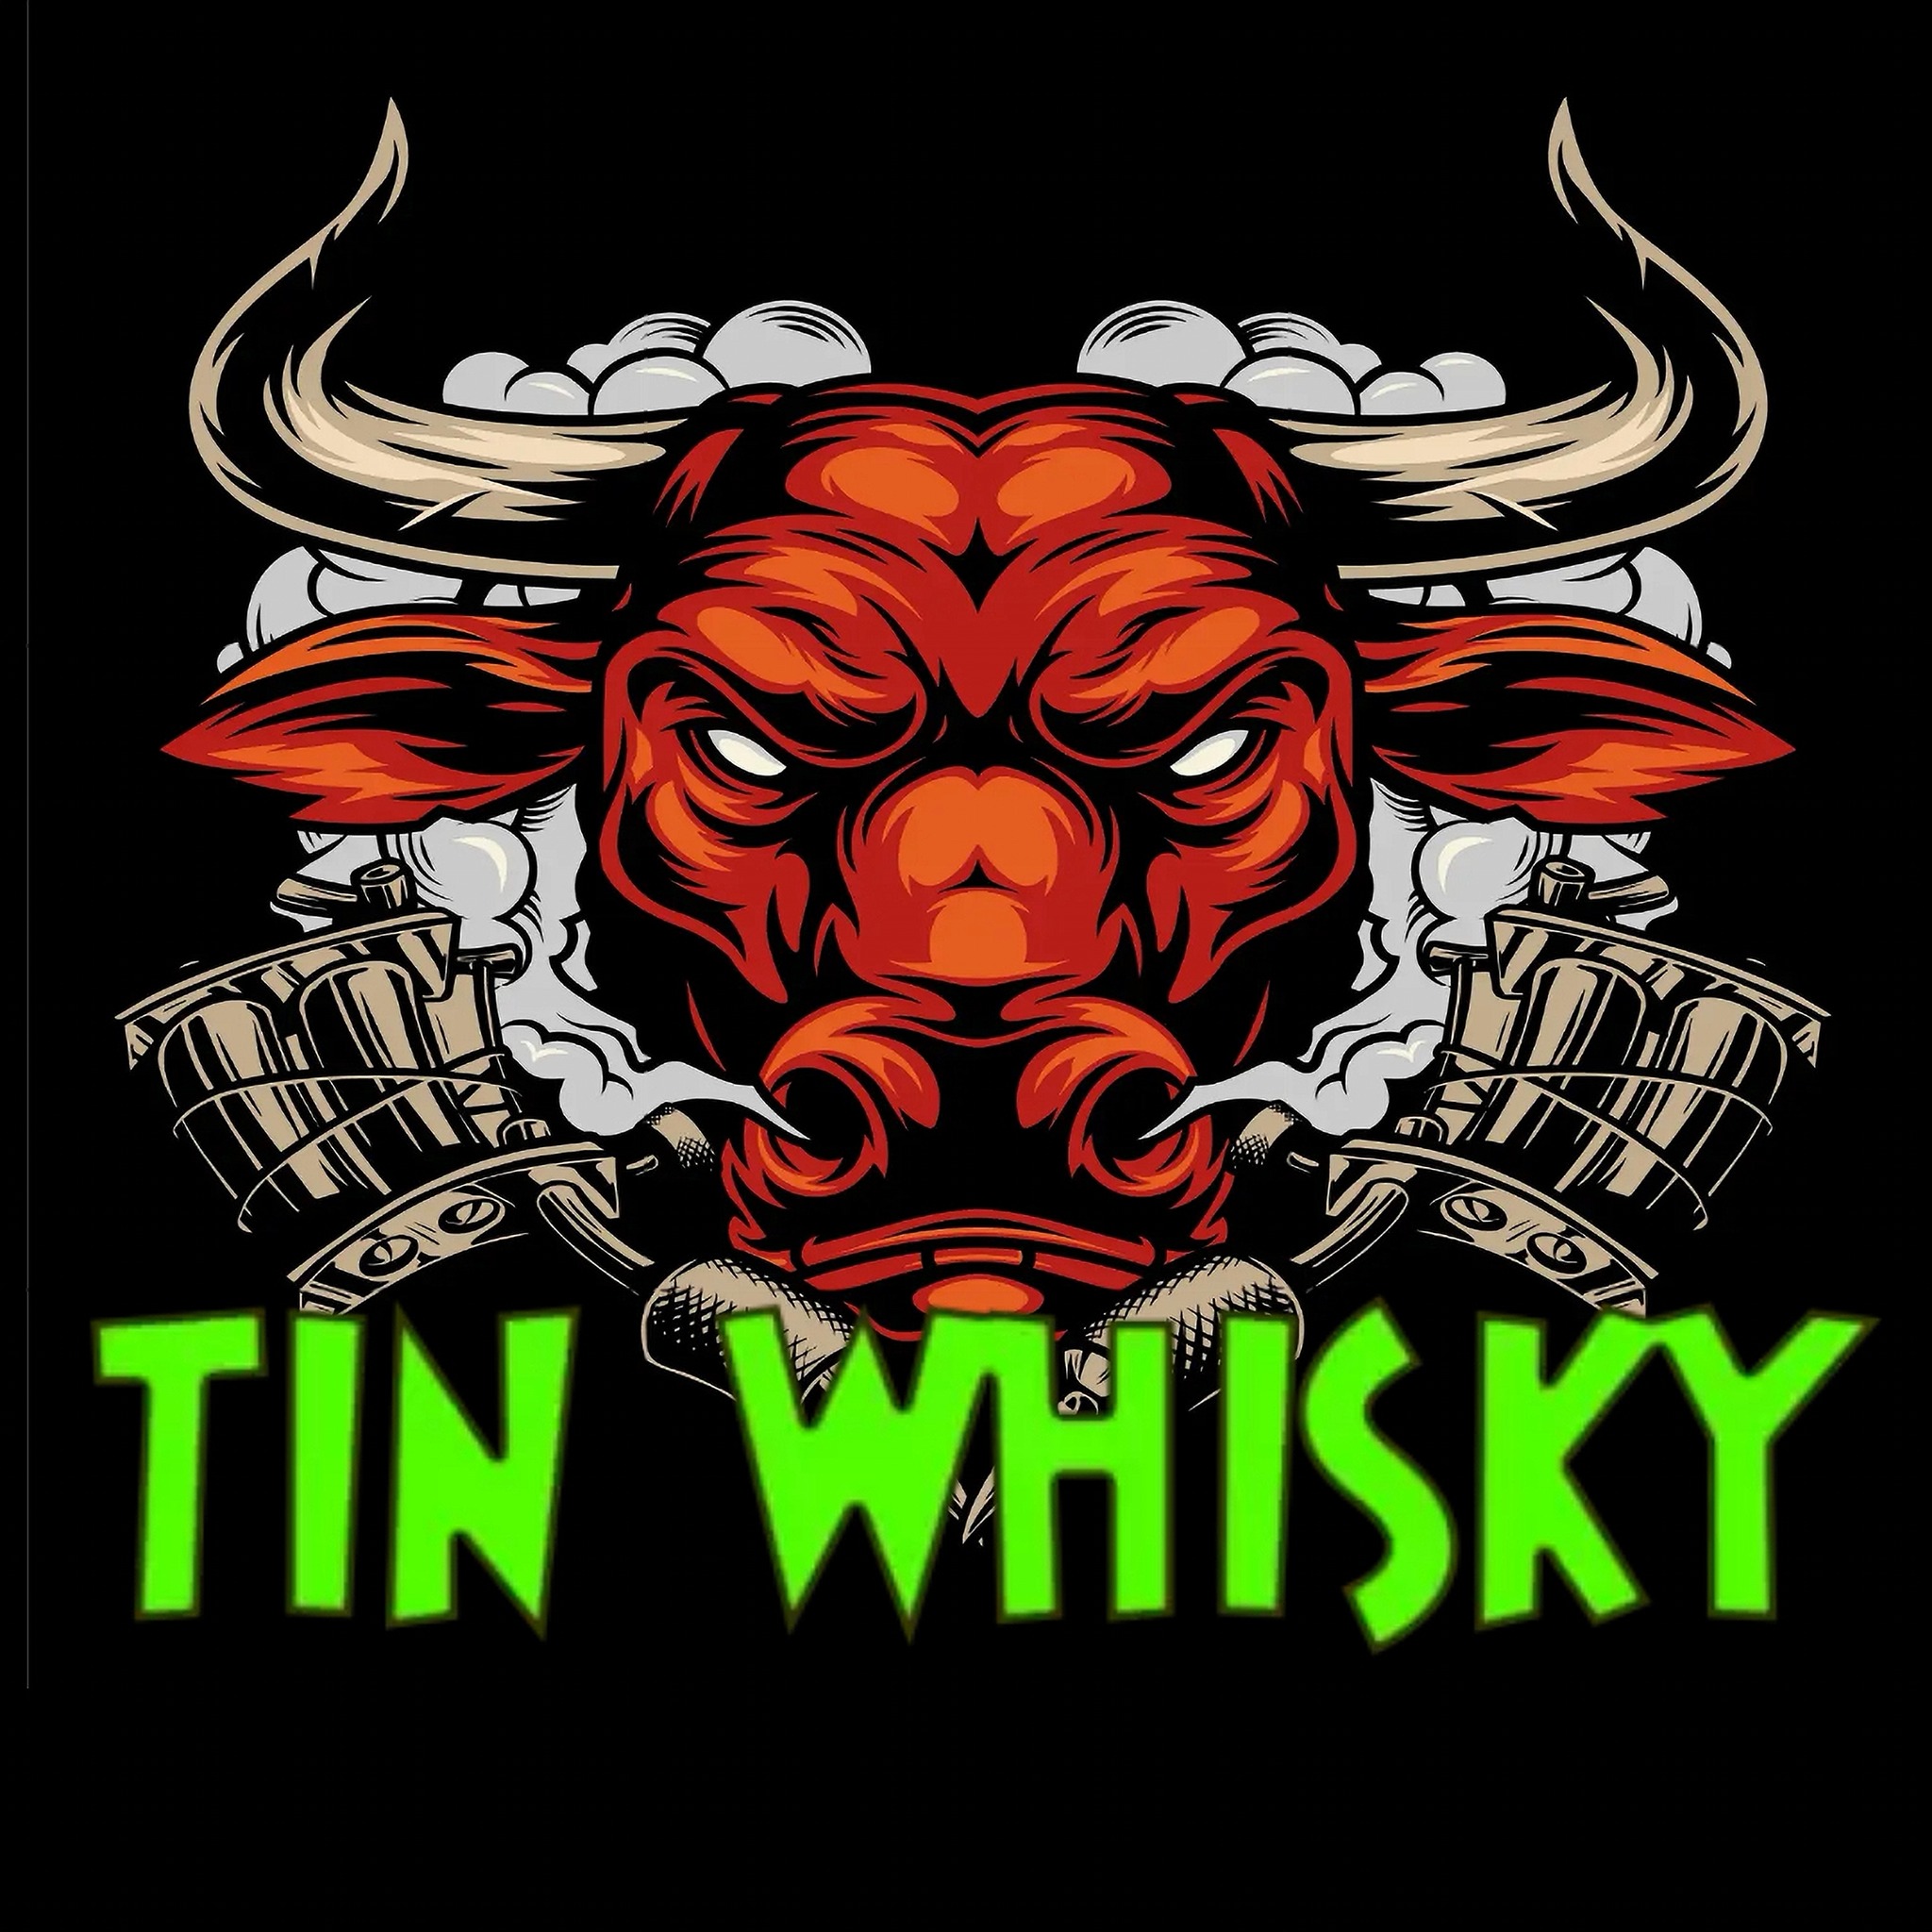 Tin Whisky